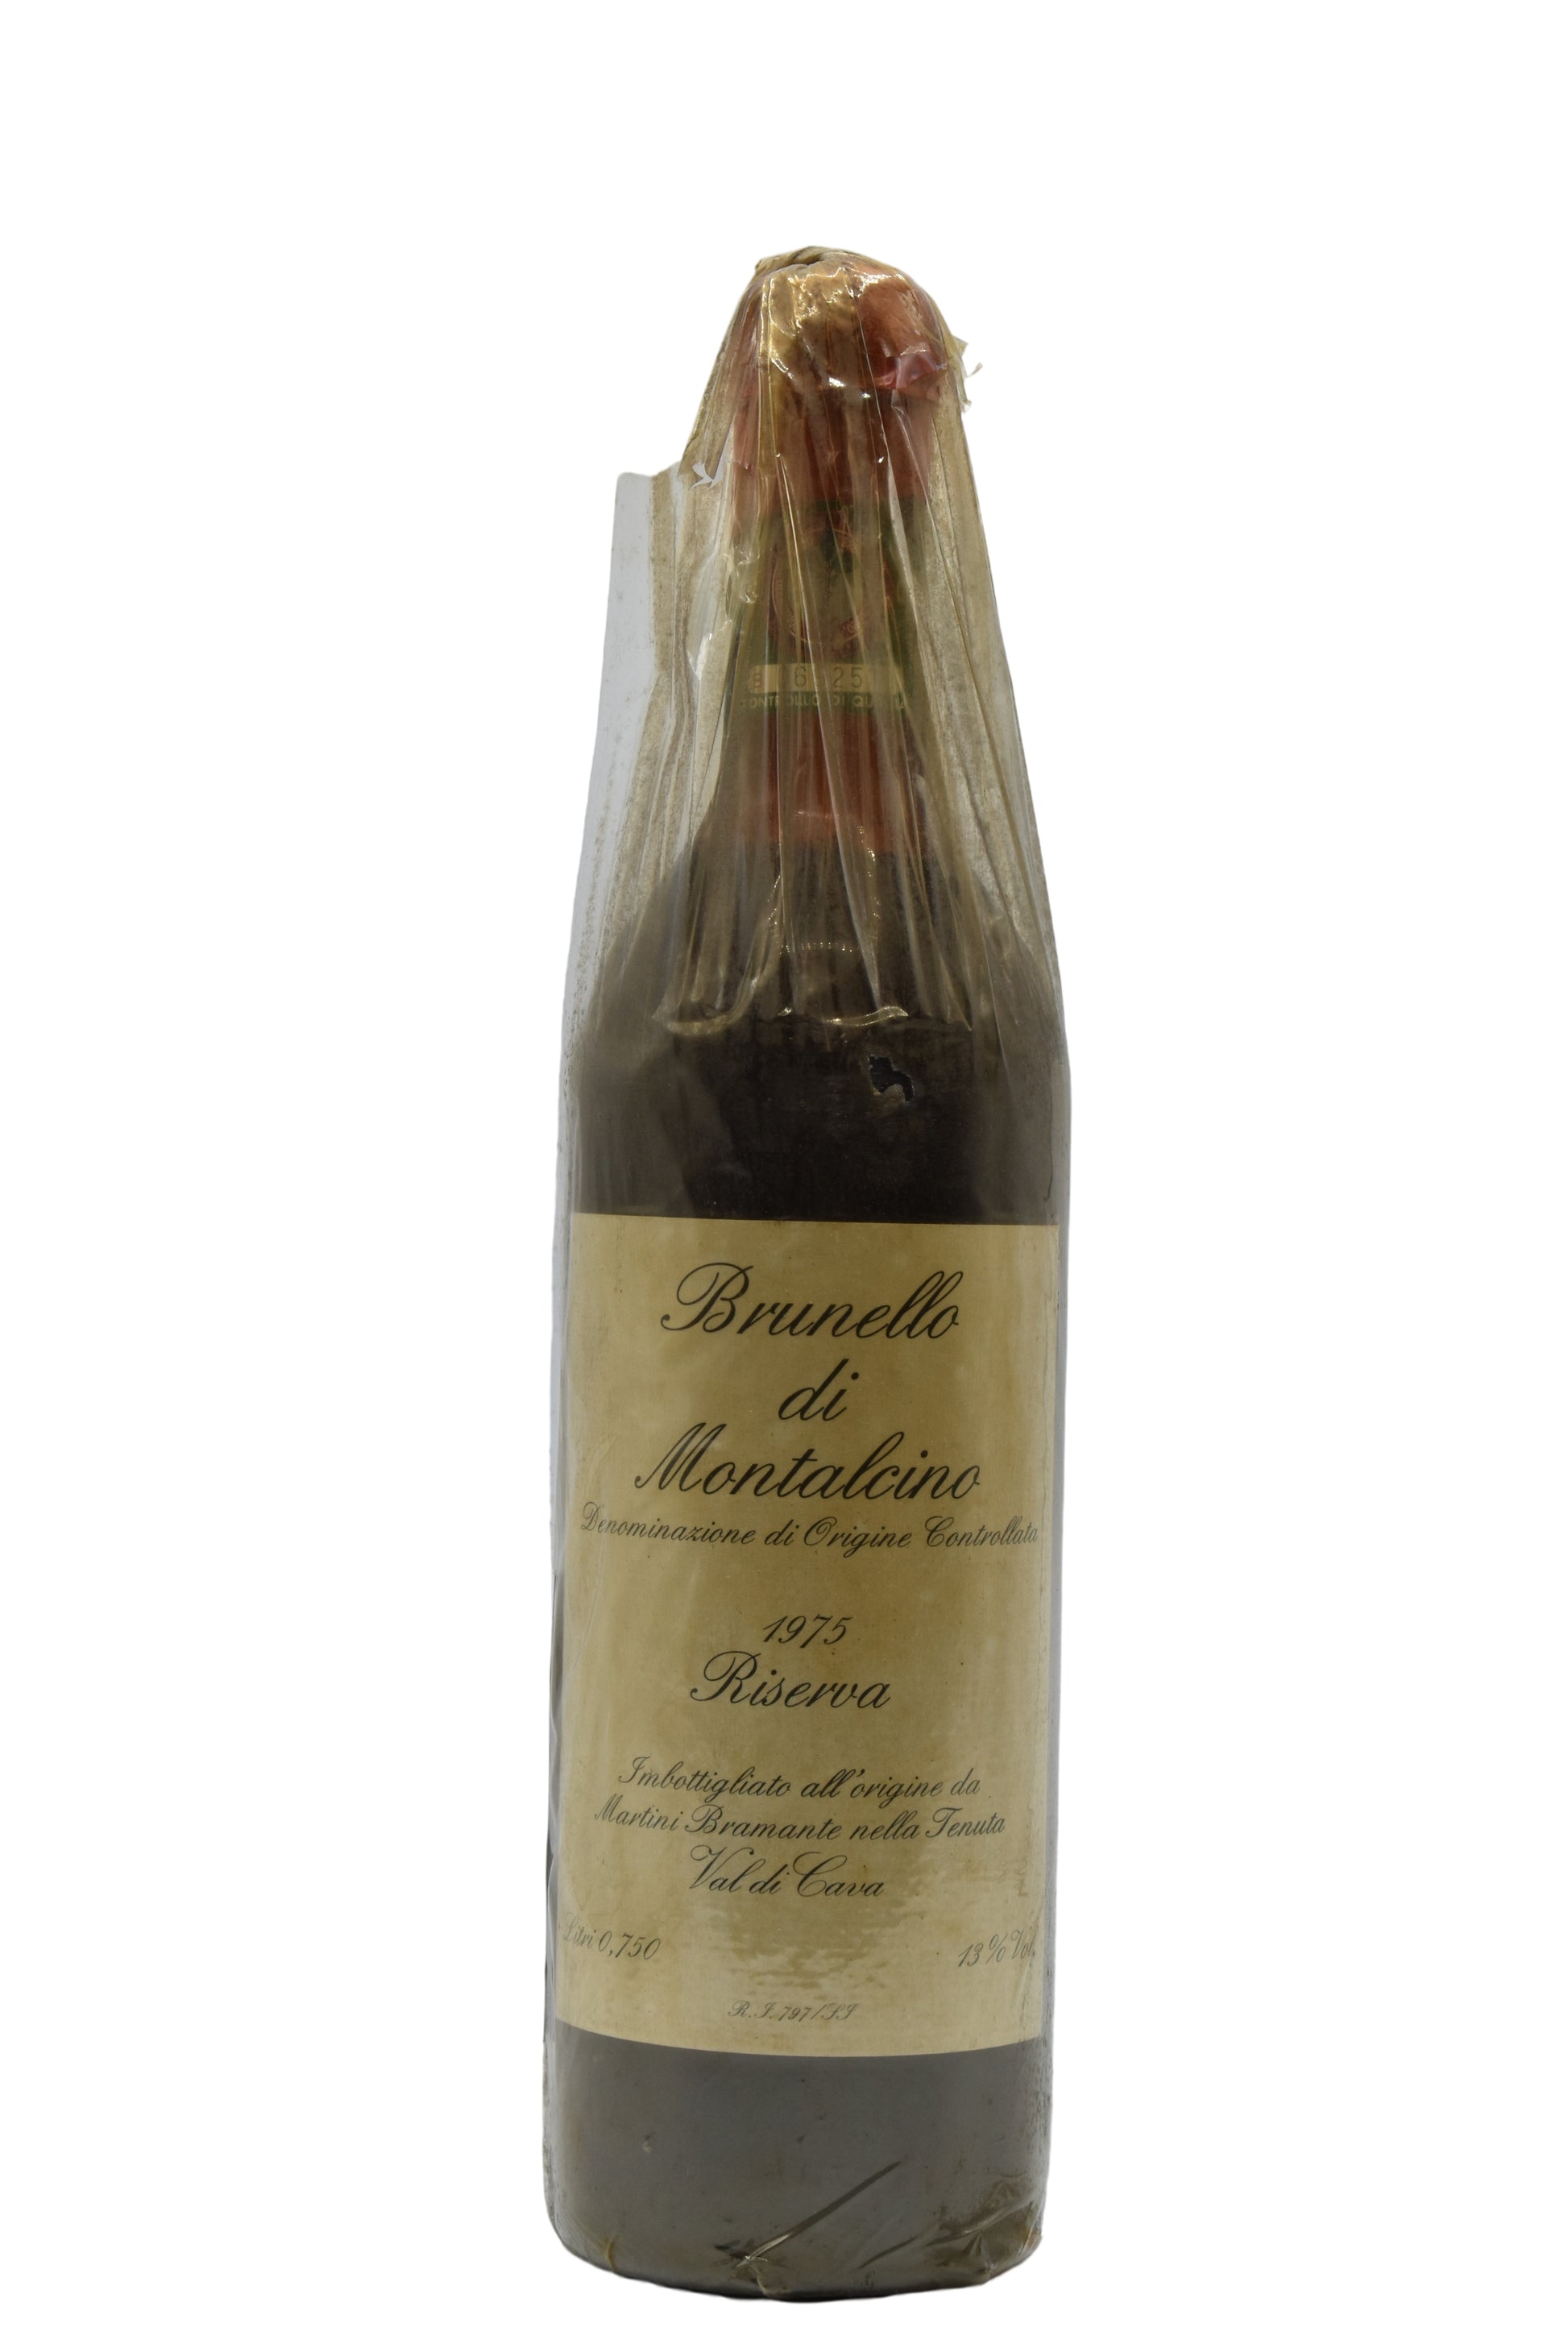 1975 Val di Cava, Brunello Di Montalcino Riserva 750ml - Walker Wine Co.